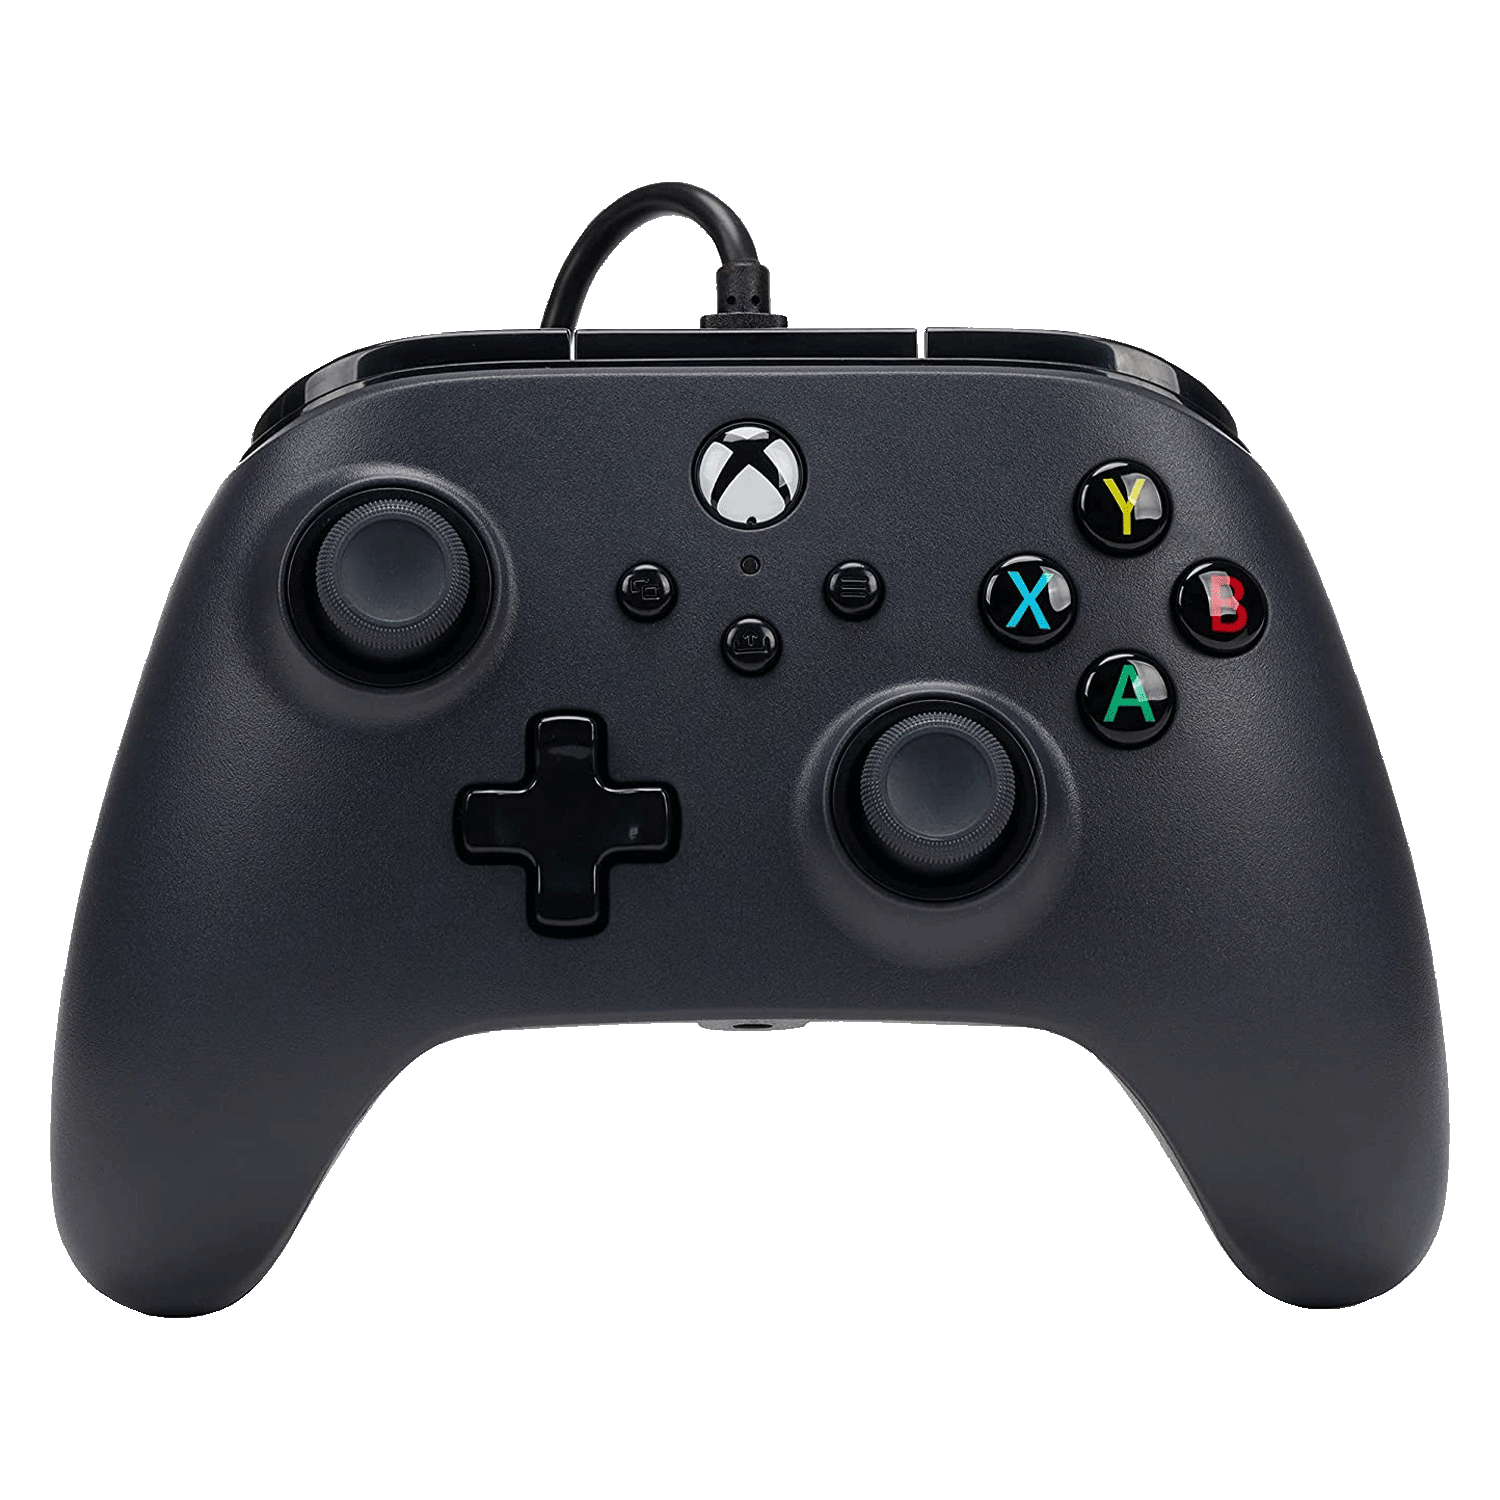 Controle PowerA Wired para Xbox - Preto (PWA-A-2124)